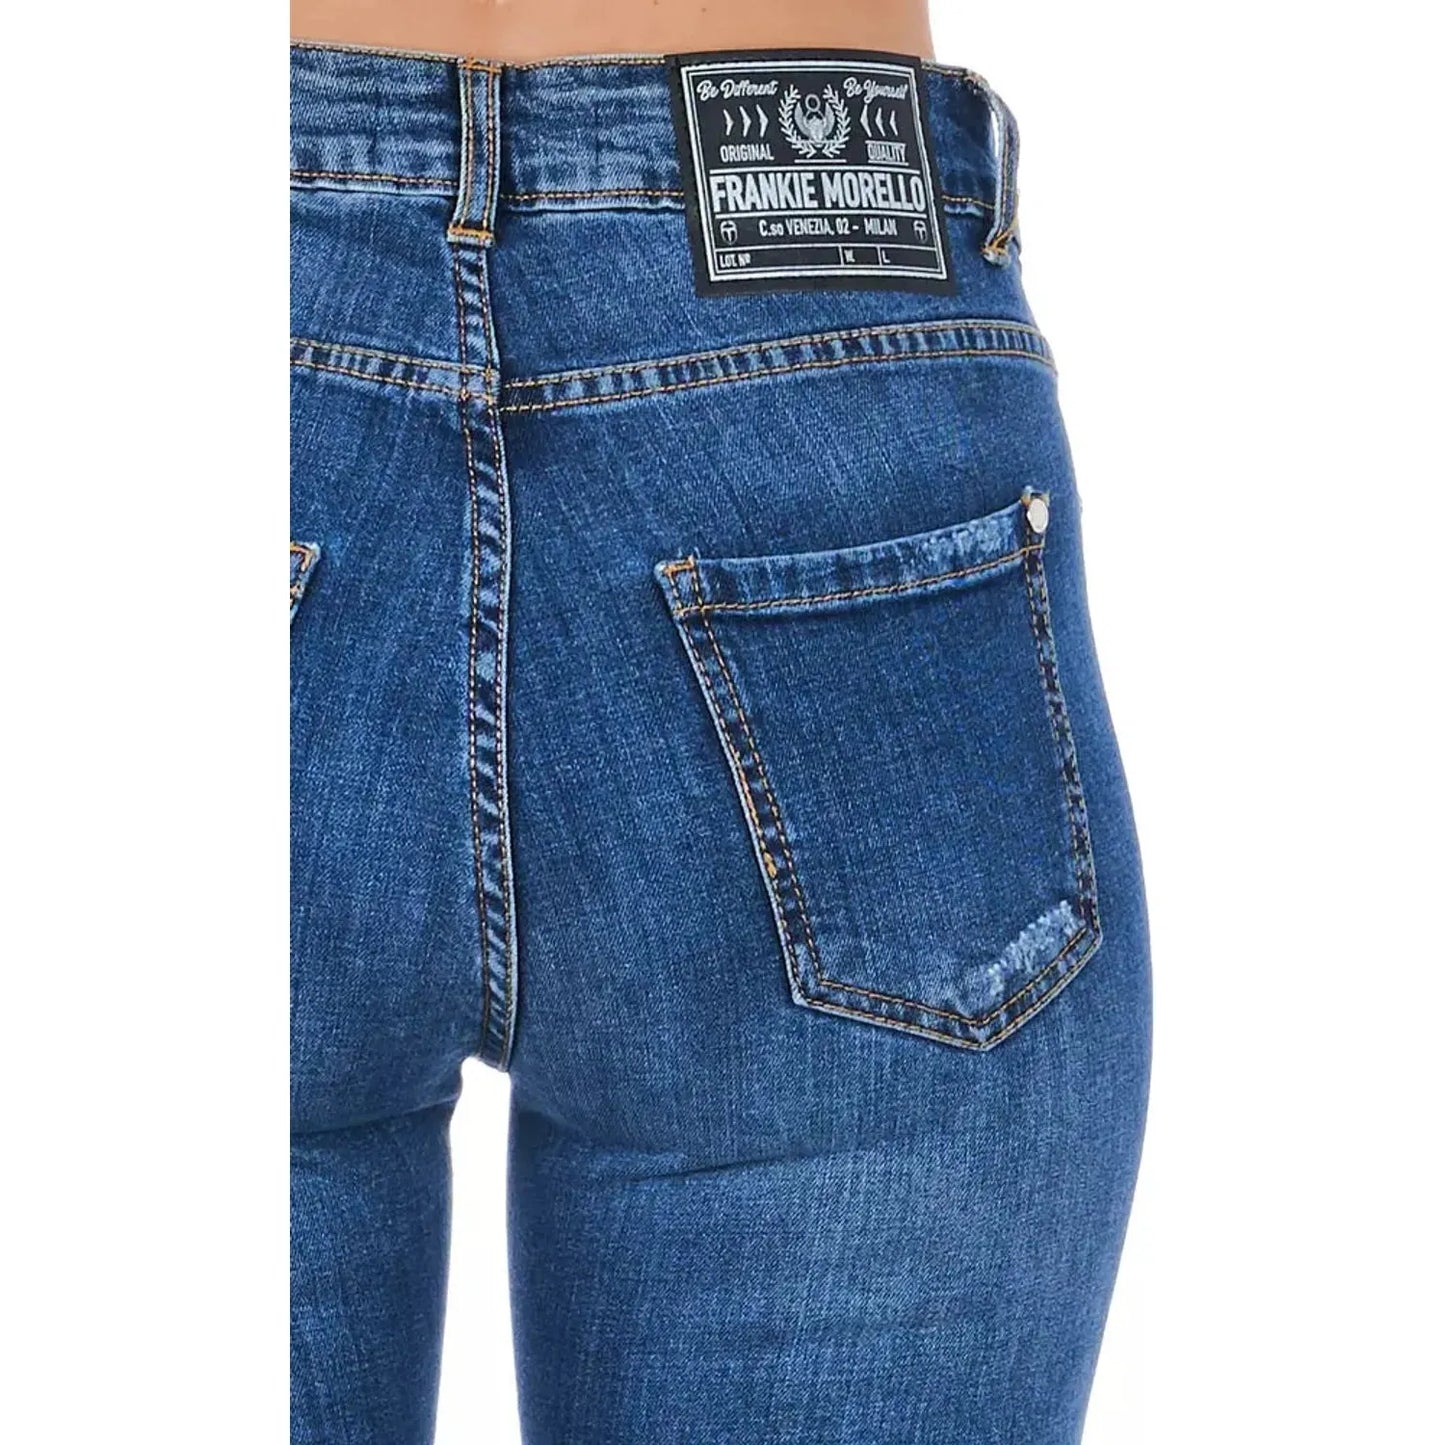 Frankie Morello Stylish Worn Wash Denim Jeans blue-jeans-pant-6 product-21770-986778763-21-86790e93-6d4.webp